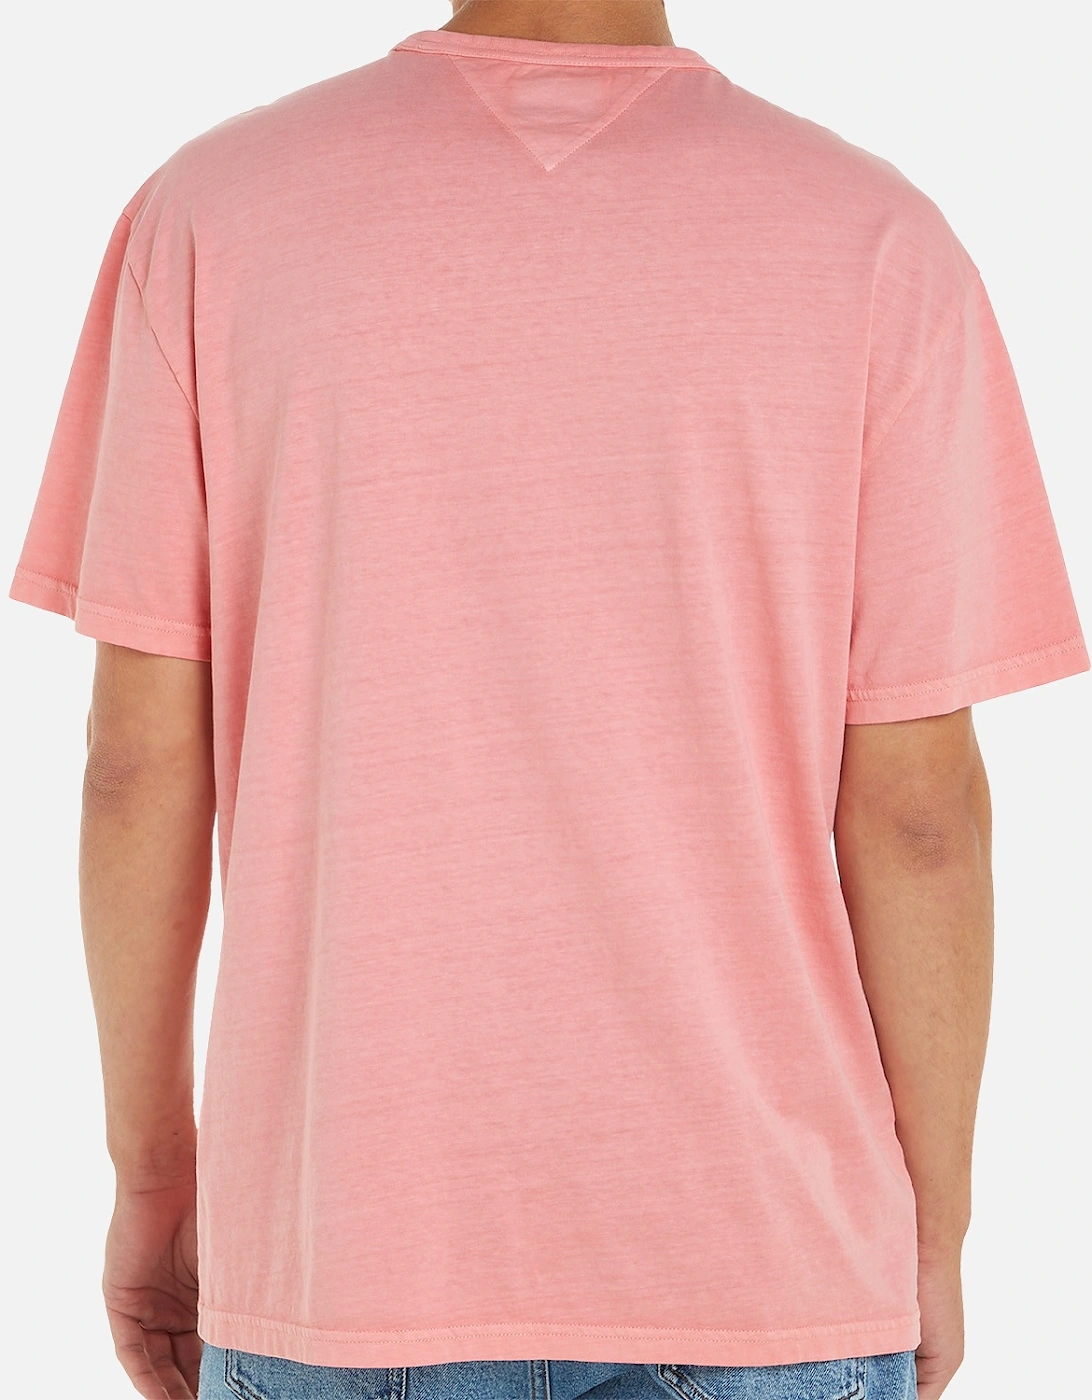 Mens Washed Badge T-Shirt (Pink)